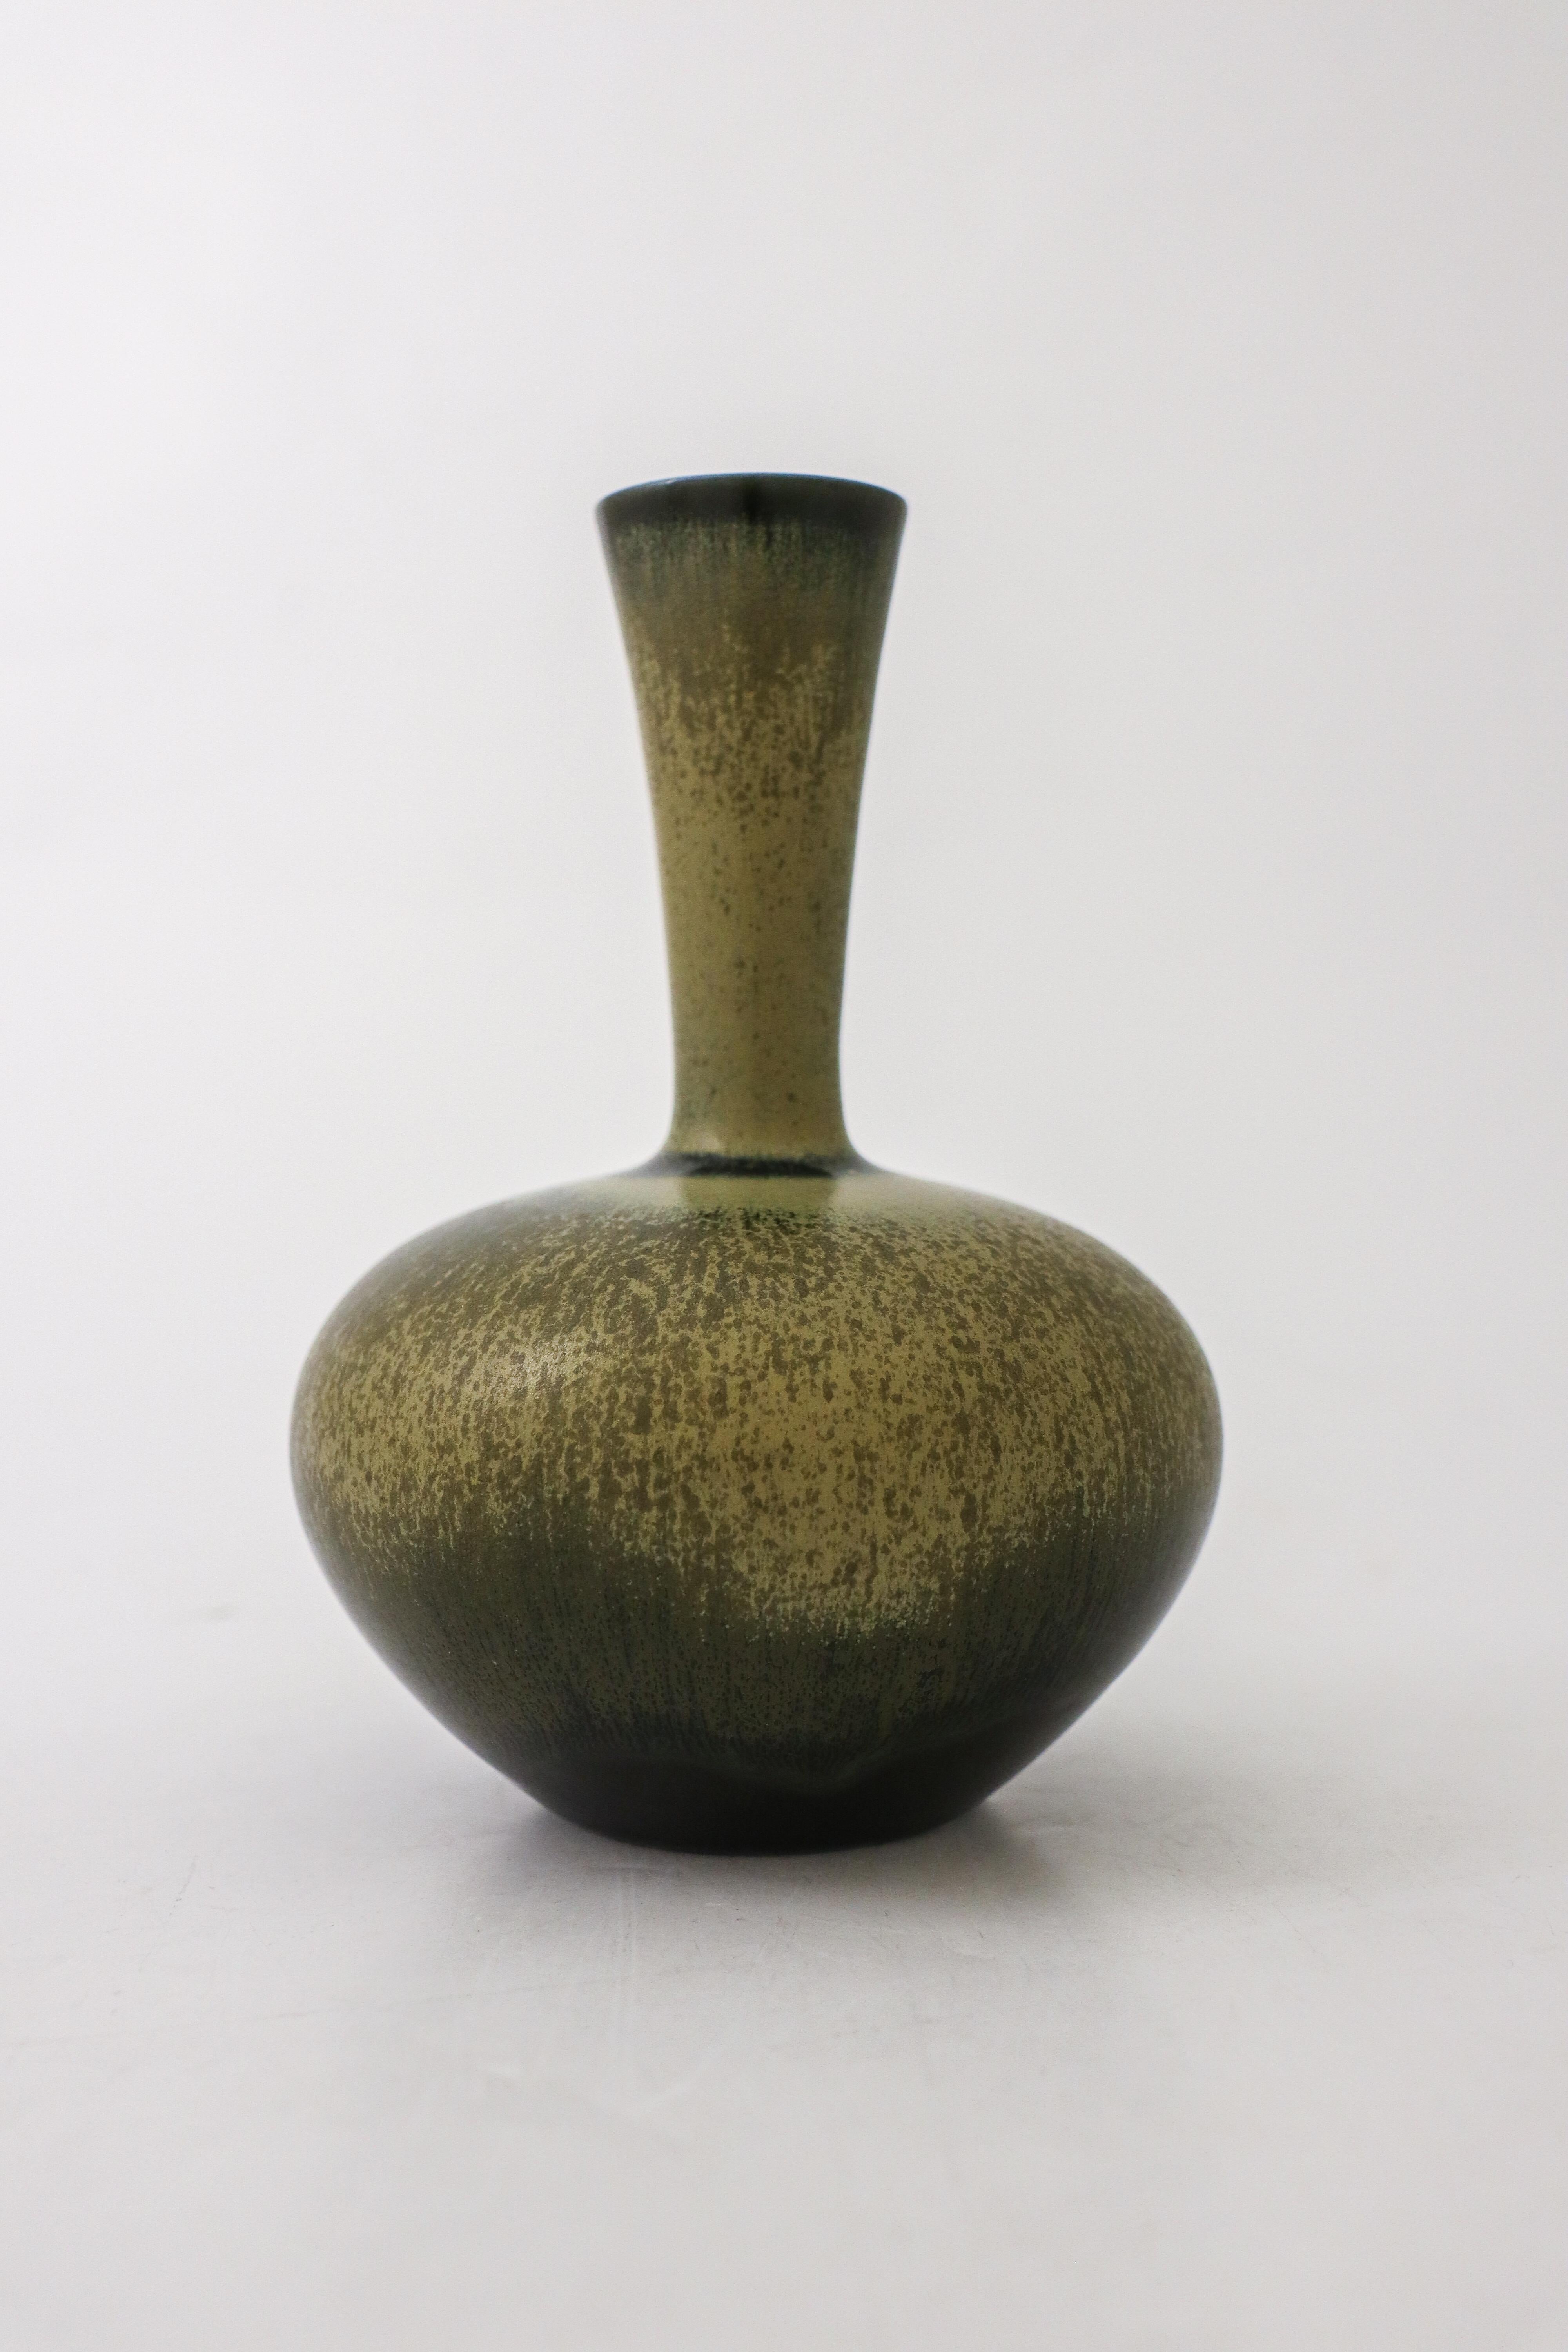 Un joli vase vert foncé avec une glaçure en fourrure de porc, conçu par Sven Wejsfelt à Gustavsberg à Stockholm en 1986. Le vase mesure 16,5 cm de haut. Il est marqué comme sur la photo. Elle est en excellent état.